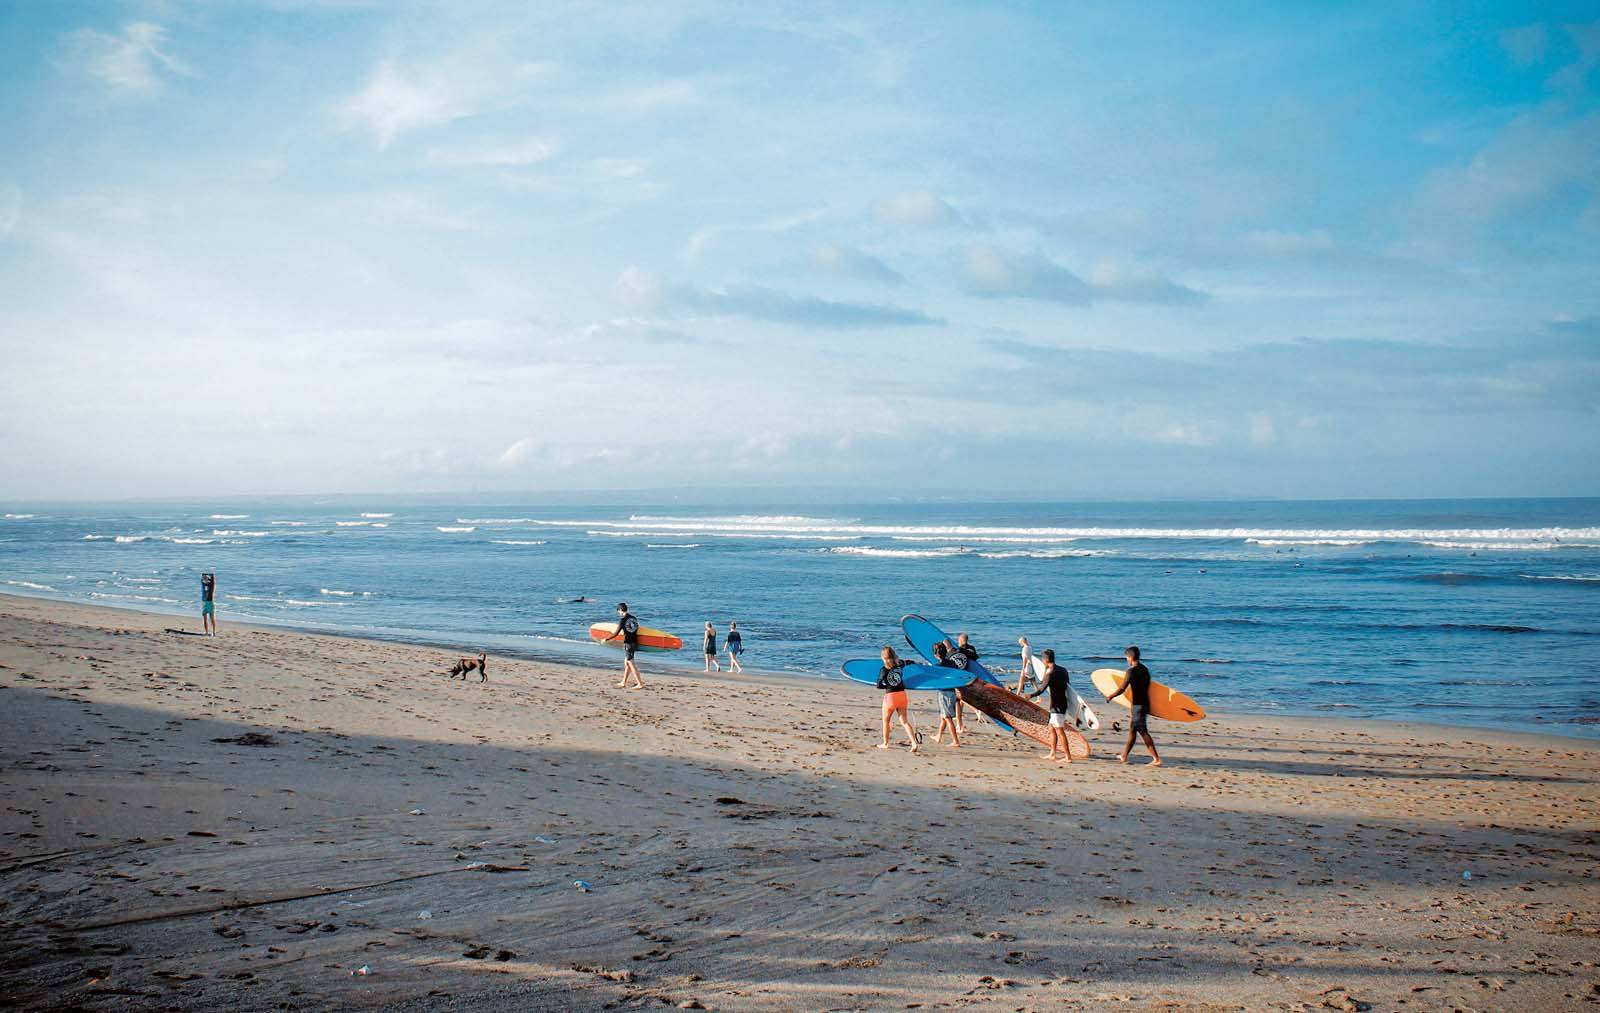 Surfers at Canggu beach in Bali, Indonesia